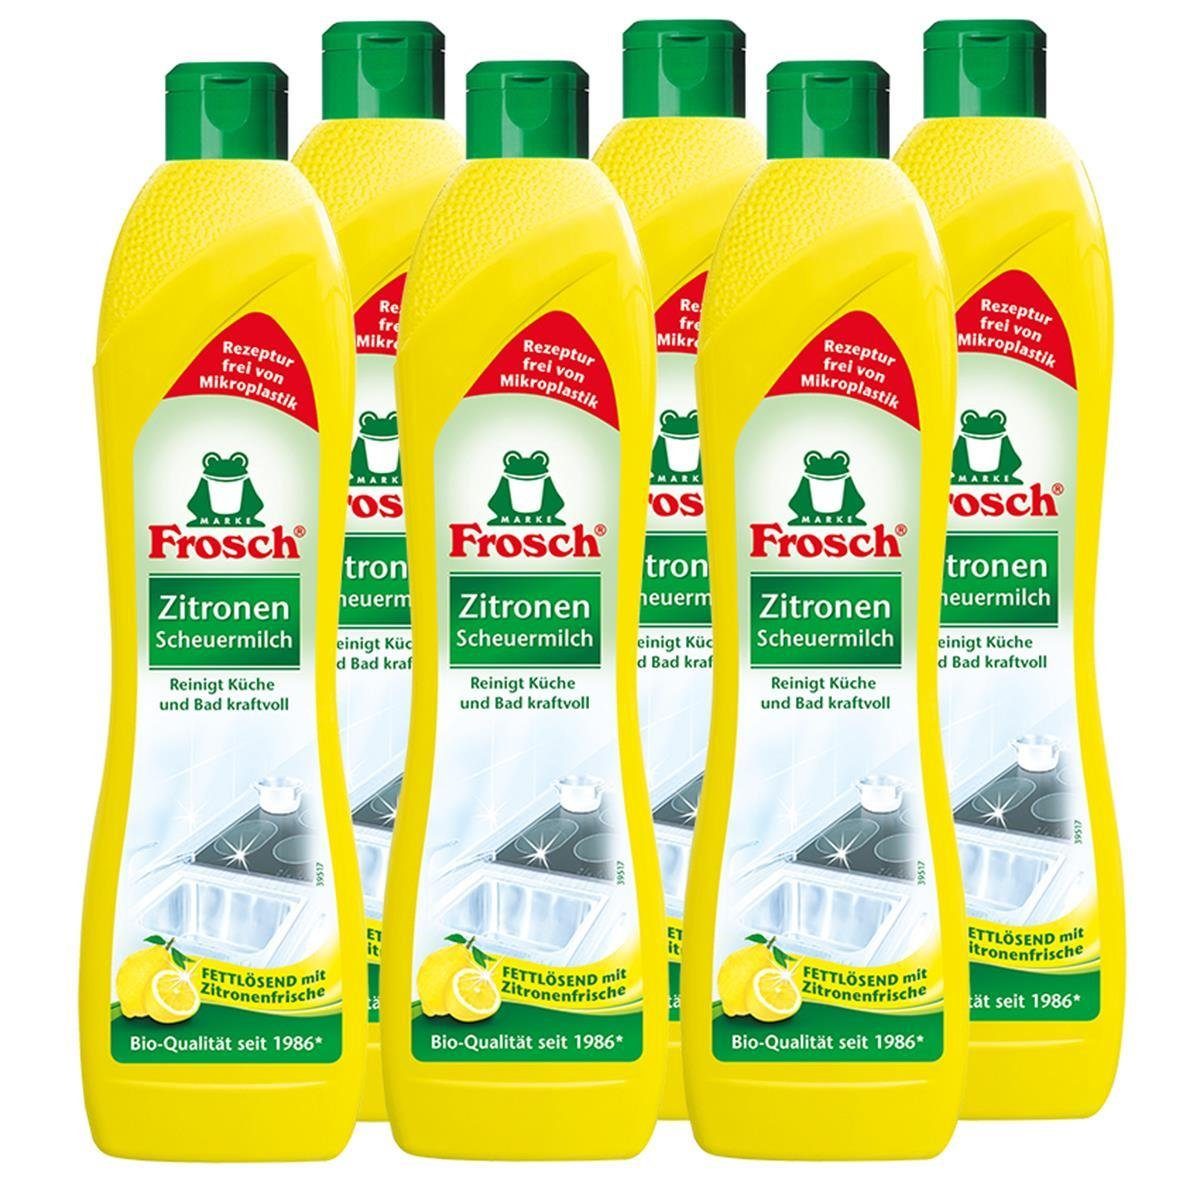 500 Reinigt Küche Scheuermilch 6x FROSCH Frosch Bad ml Spezialwaschmittel und Zitronen kraftvo -